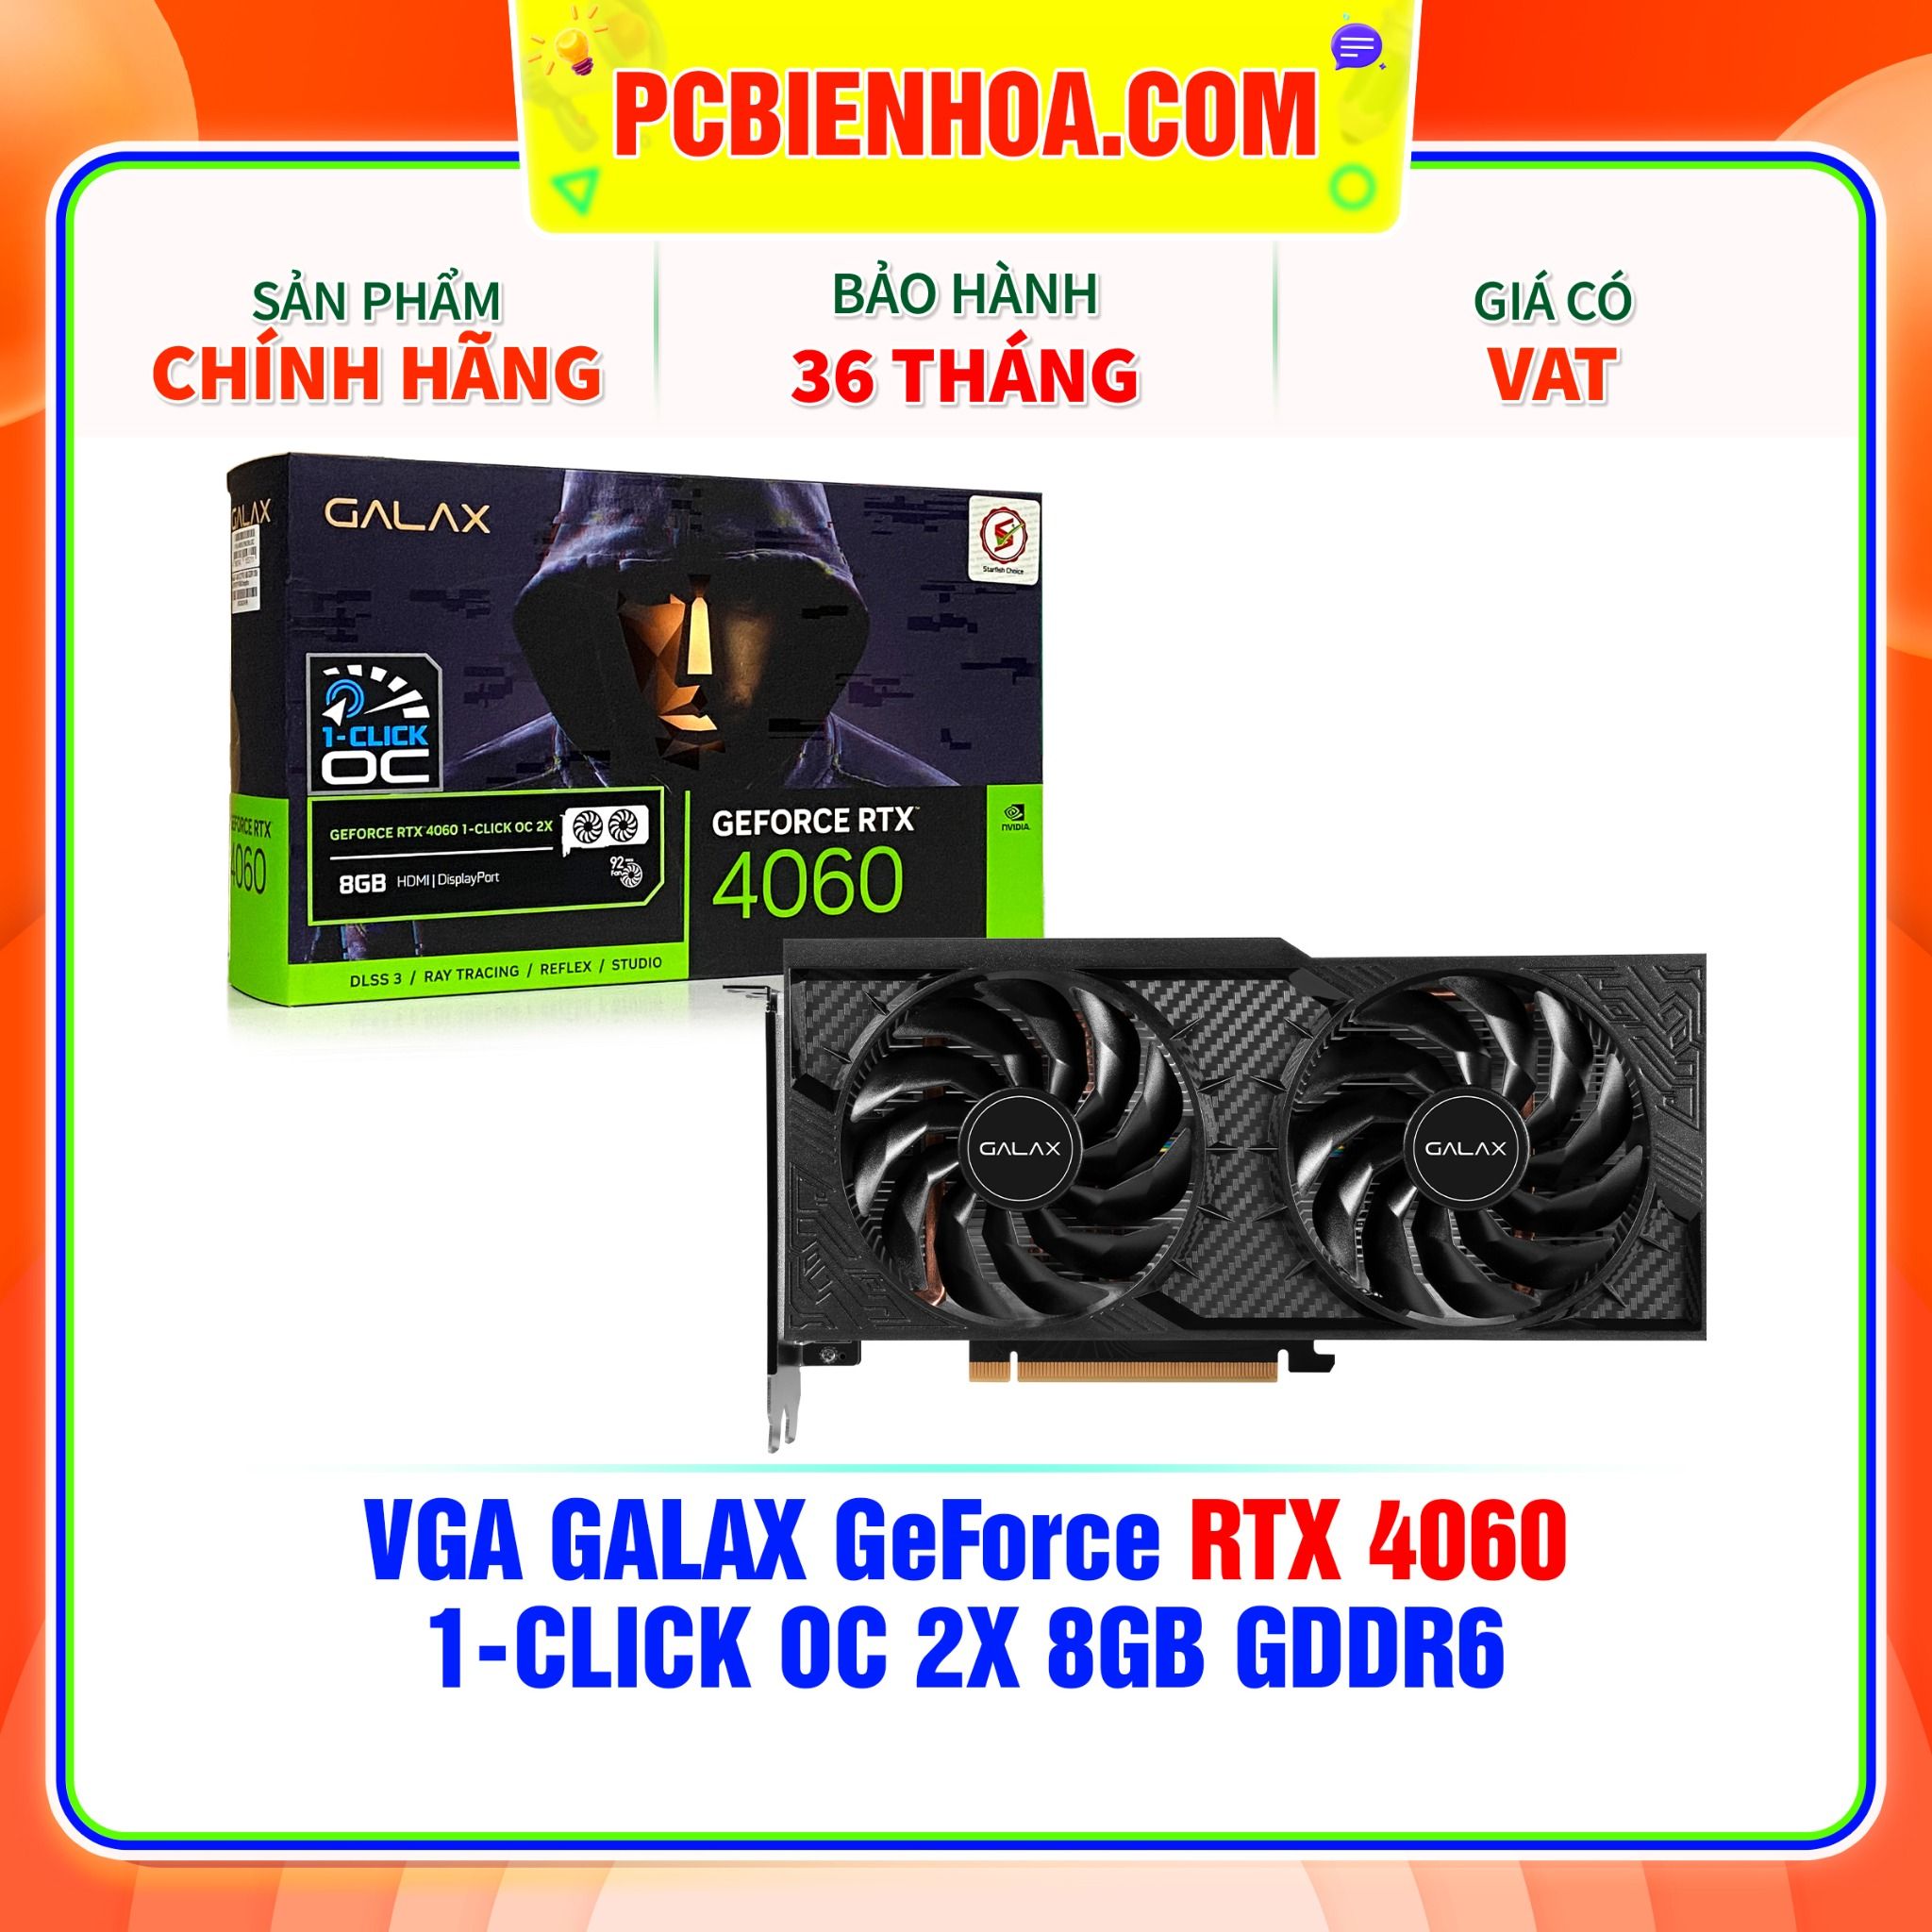  VGA GALAX GeForce RTX 4060 1-CLICK OC 2X 8GB GDDR6 ( 46NSL8MD8LOC ) 